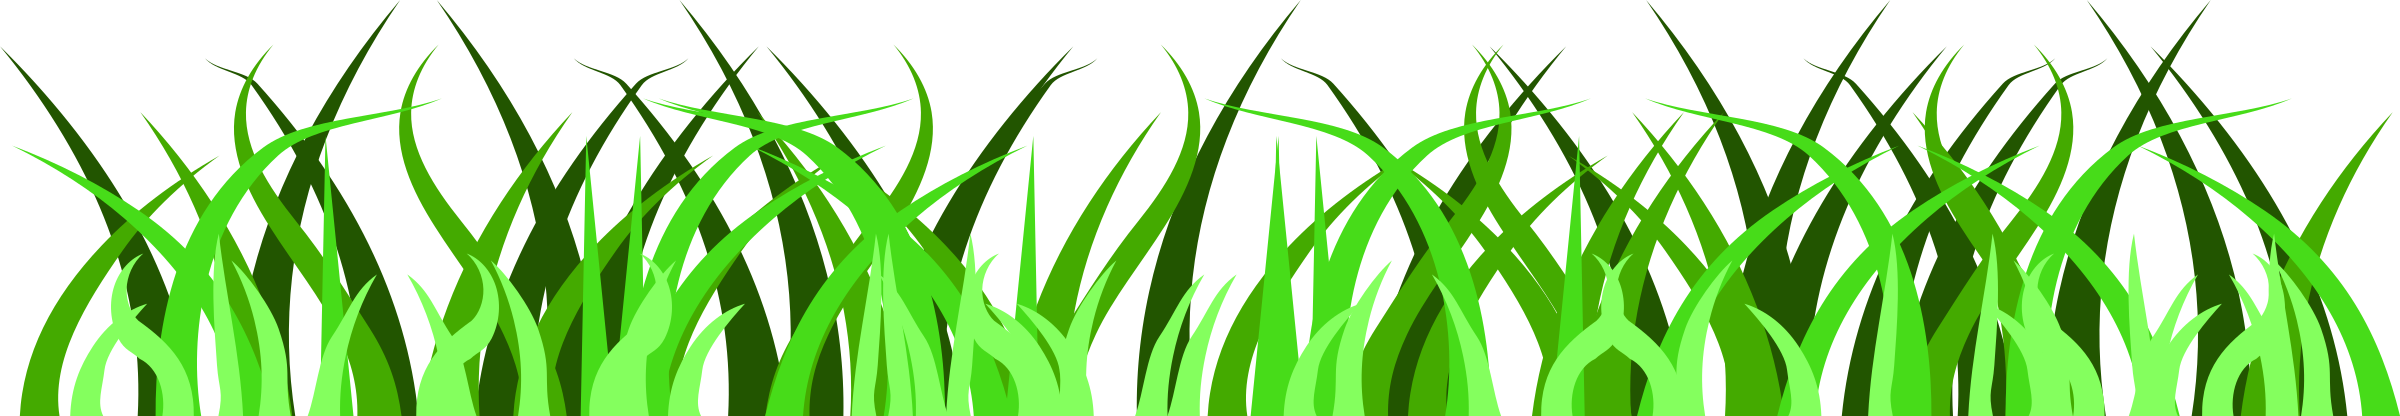 Grass Border Clip Art Free - Grass Vector Art Free (2400x416)